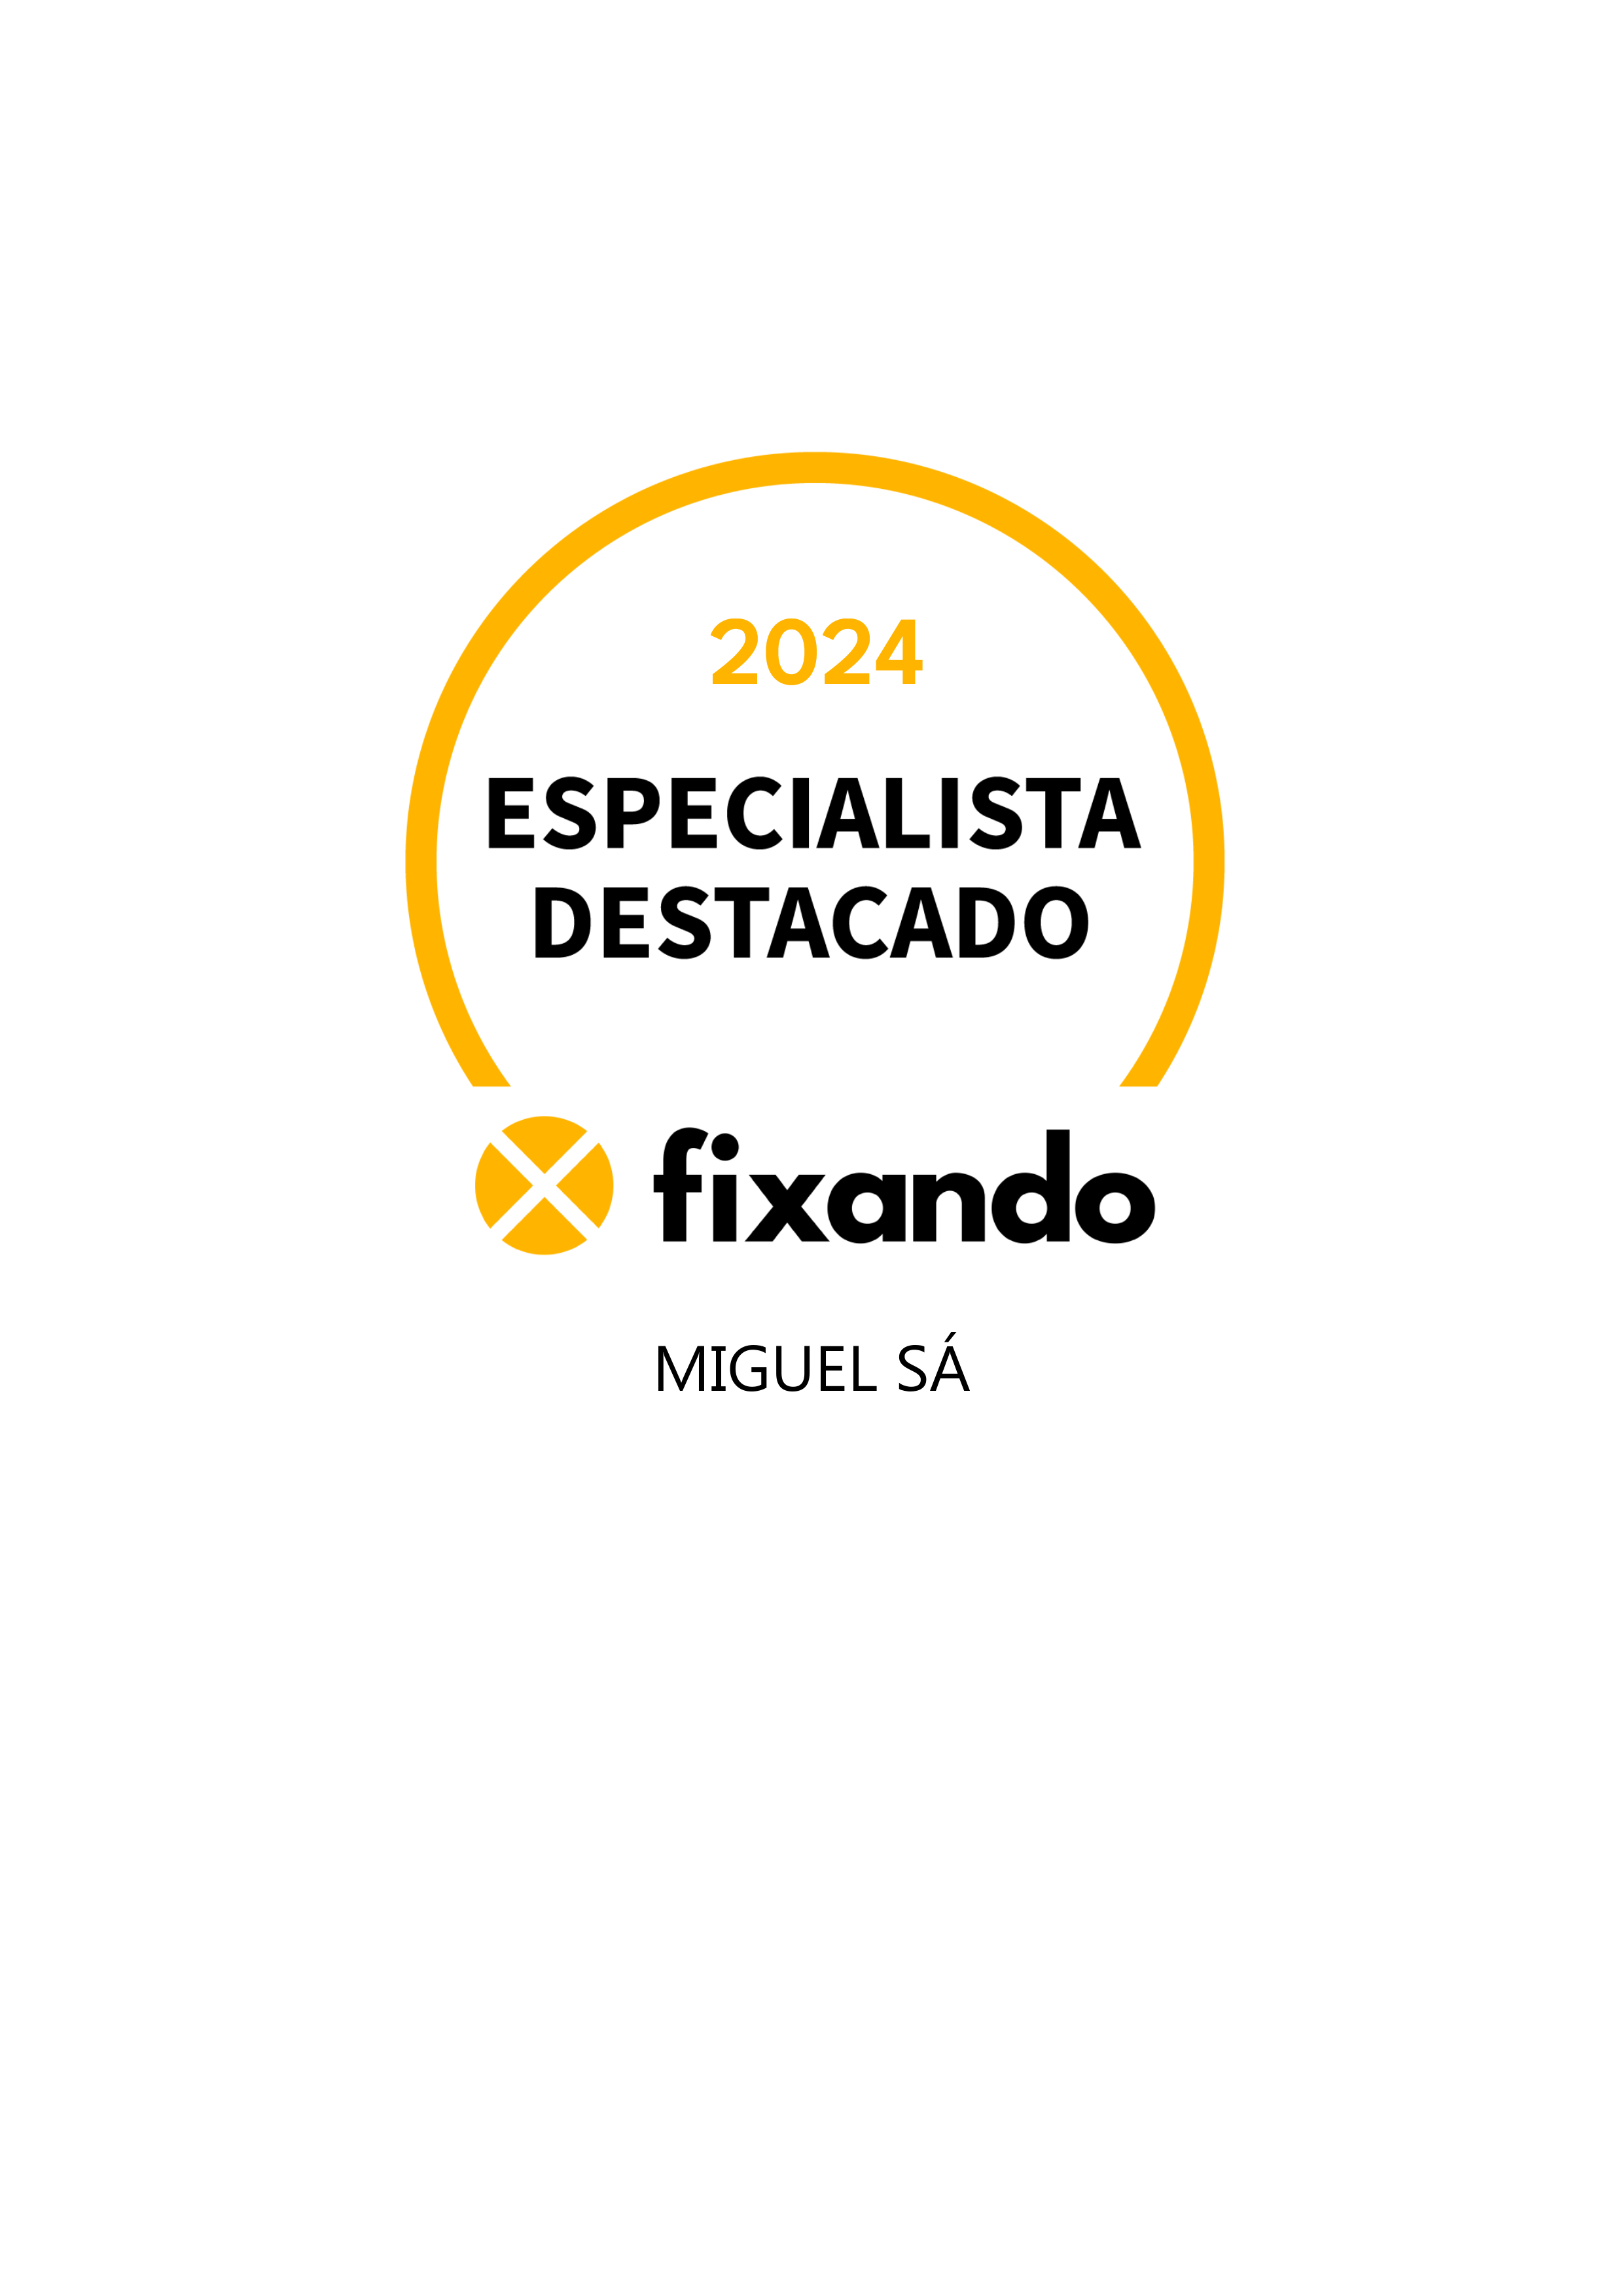 Miguel Sá - Moita - Design de Logotipos